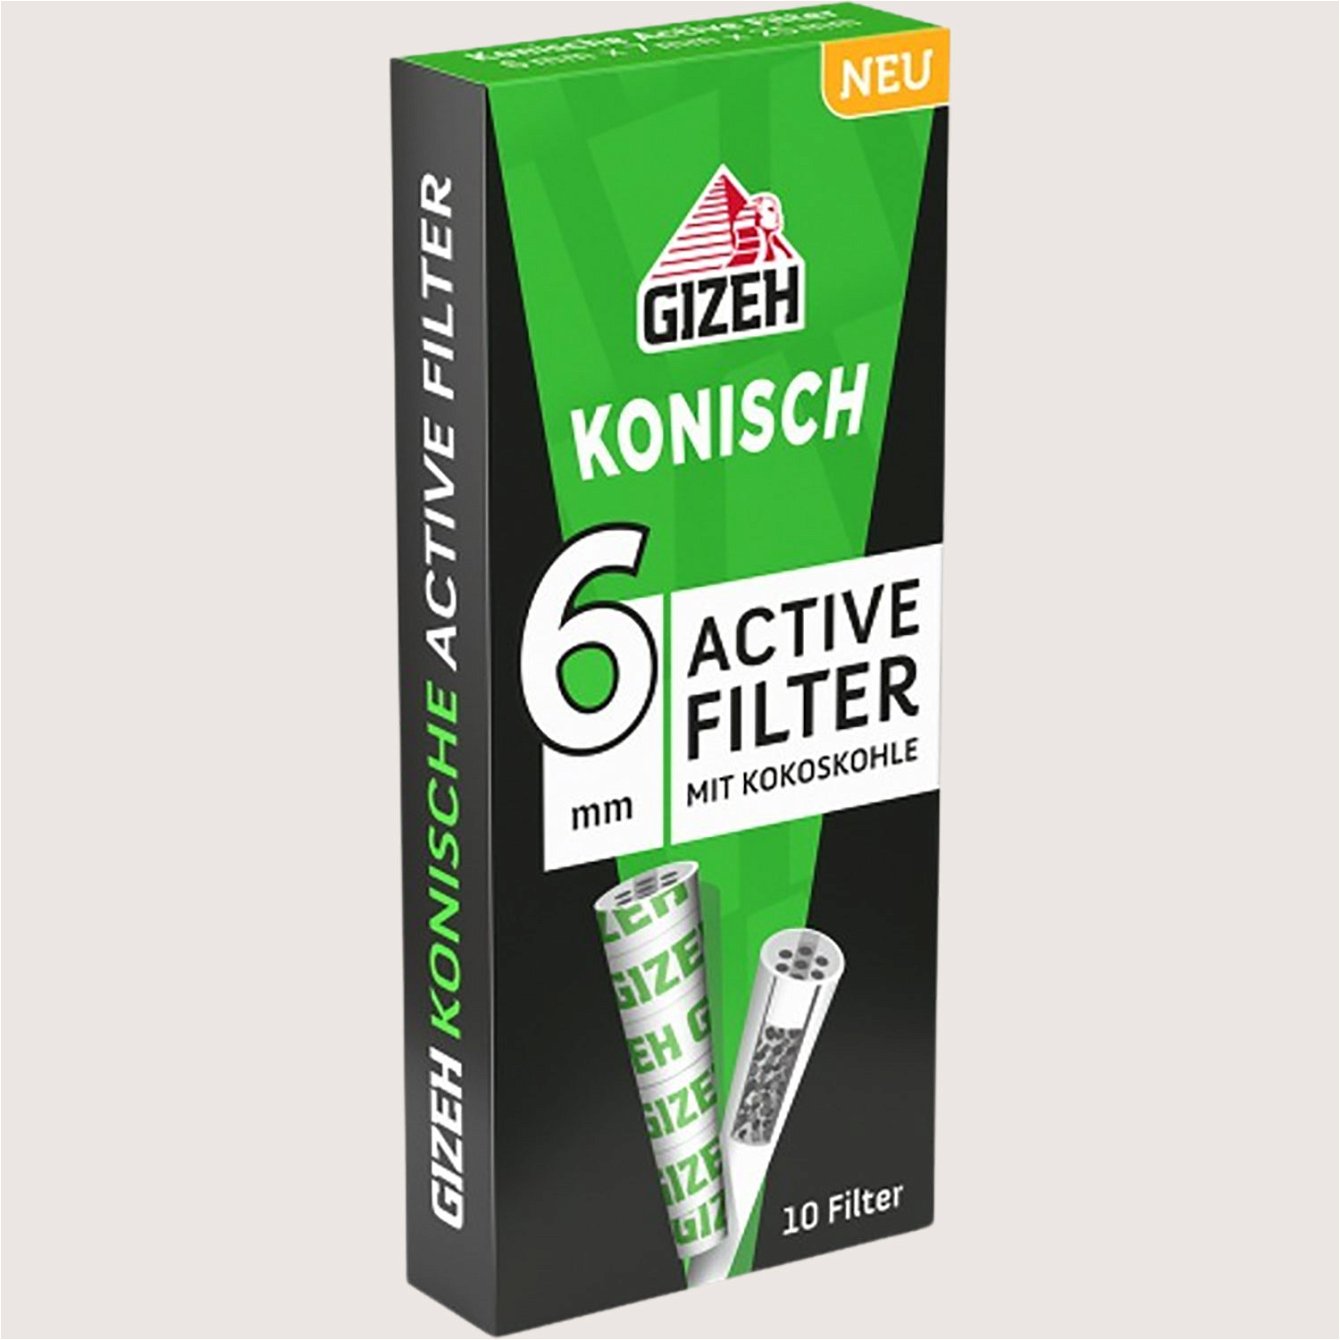 Gizeh Active Filter Konisch 10 Filter